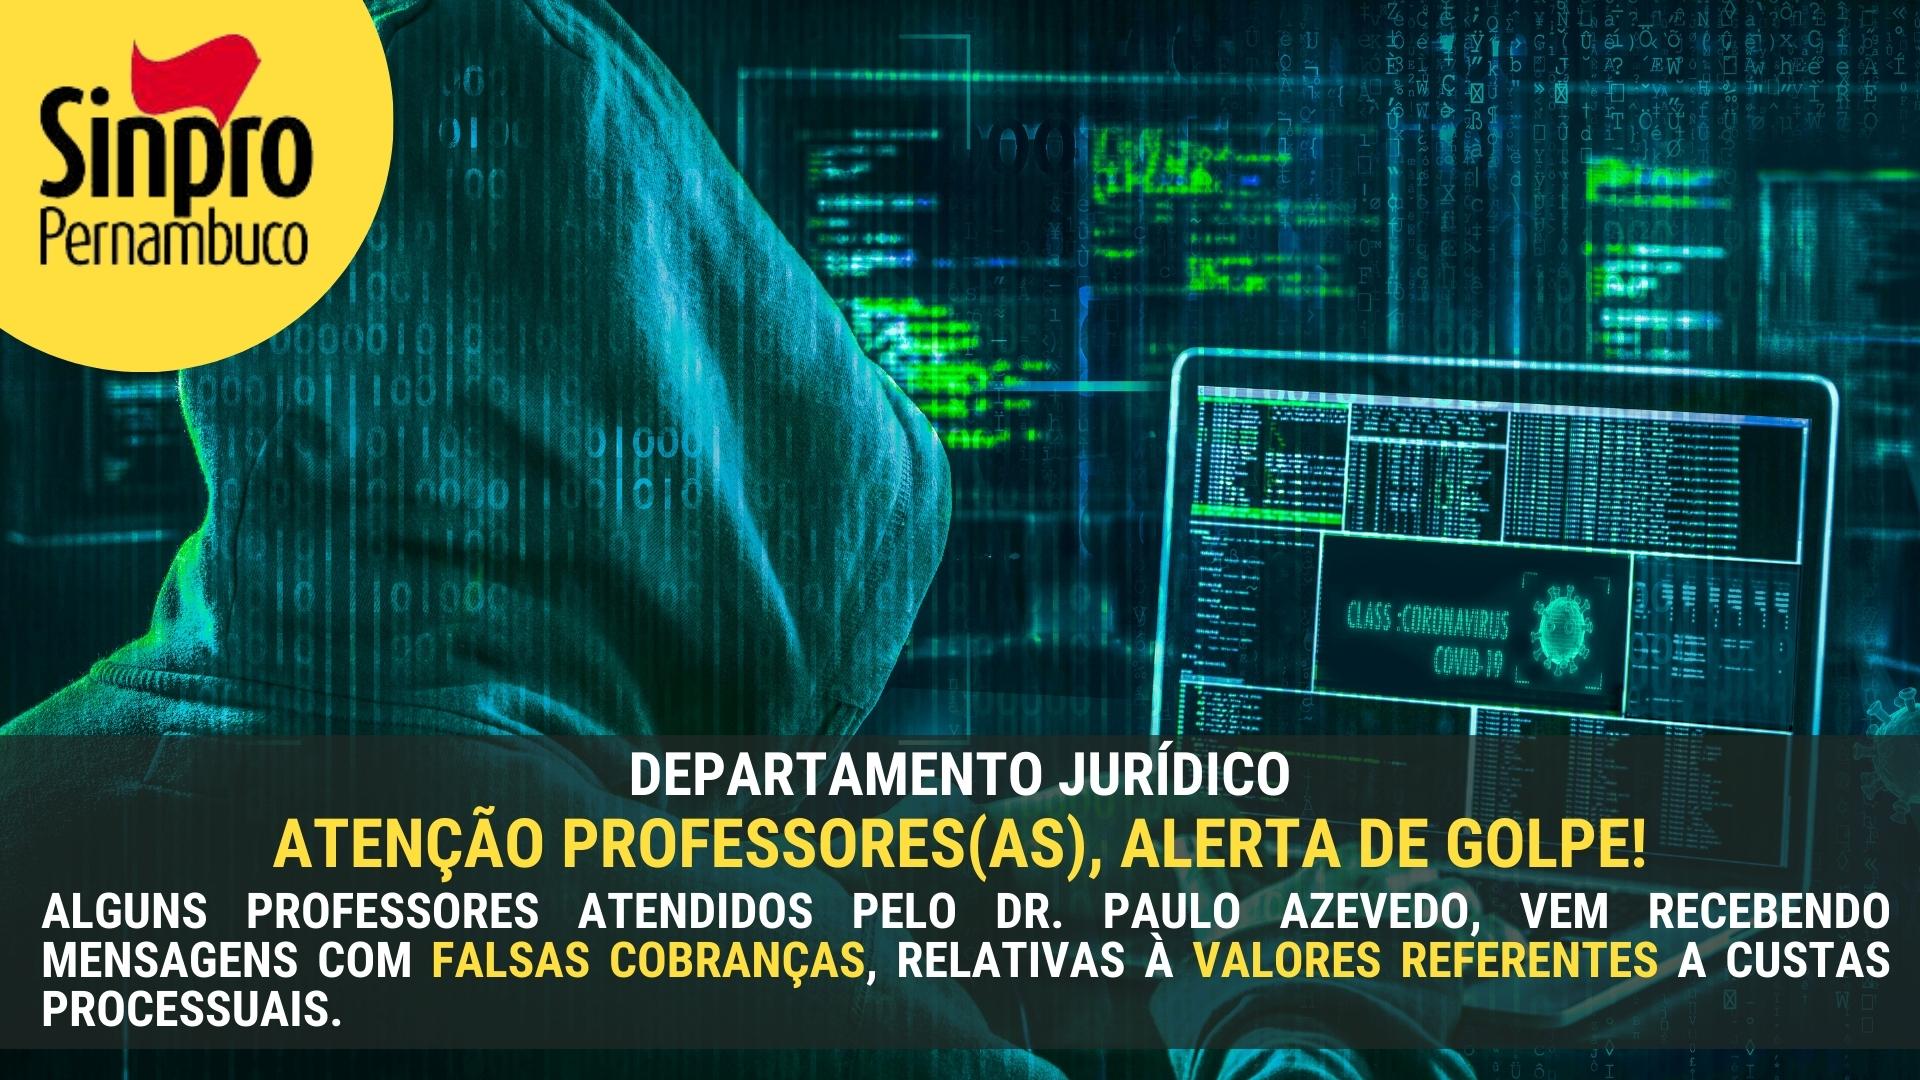 DEPARTAMENTO JURÍDICO: ATENÇÃO PROFESSORES(AS), ALERTA DE GOLPE!